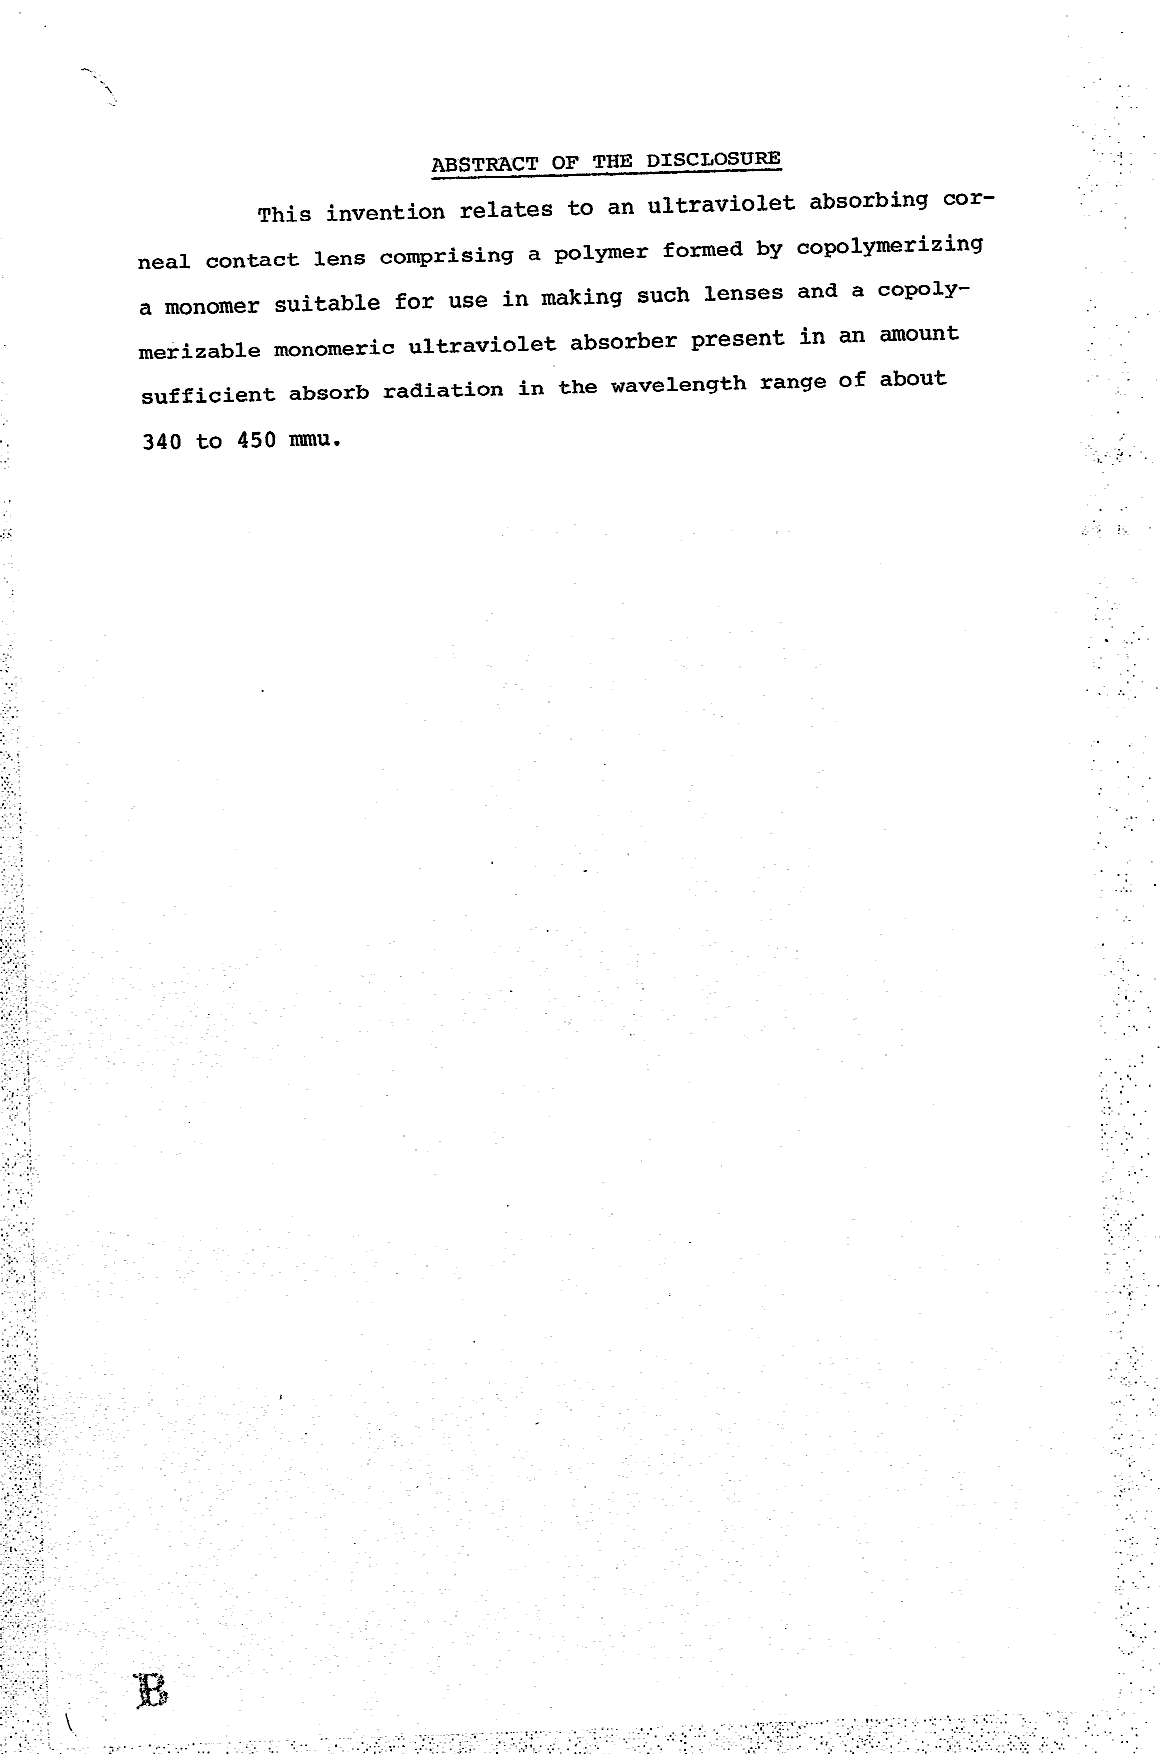 Document de brevet canadien 1031200. Abrégé 19940511. Image 1 de 1